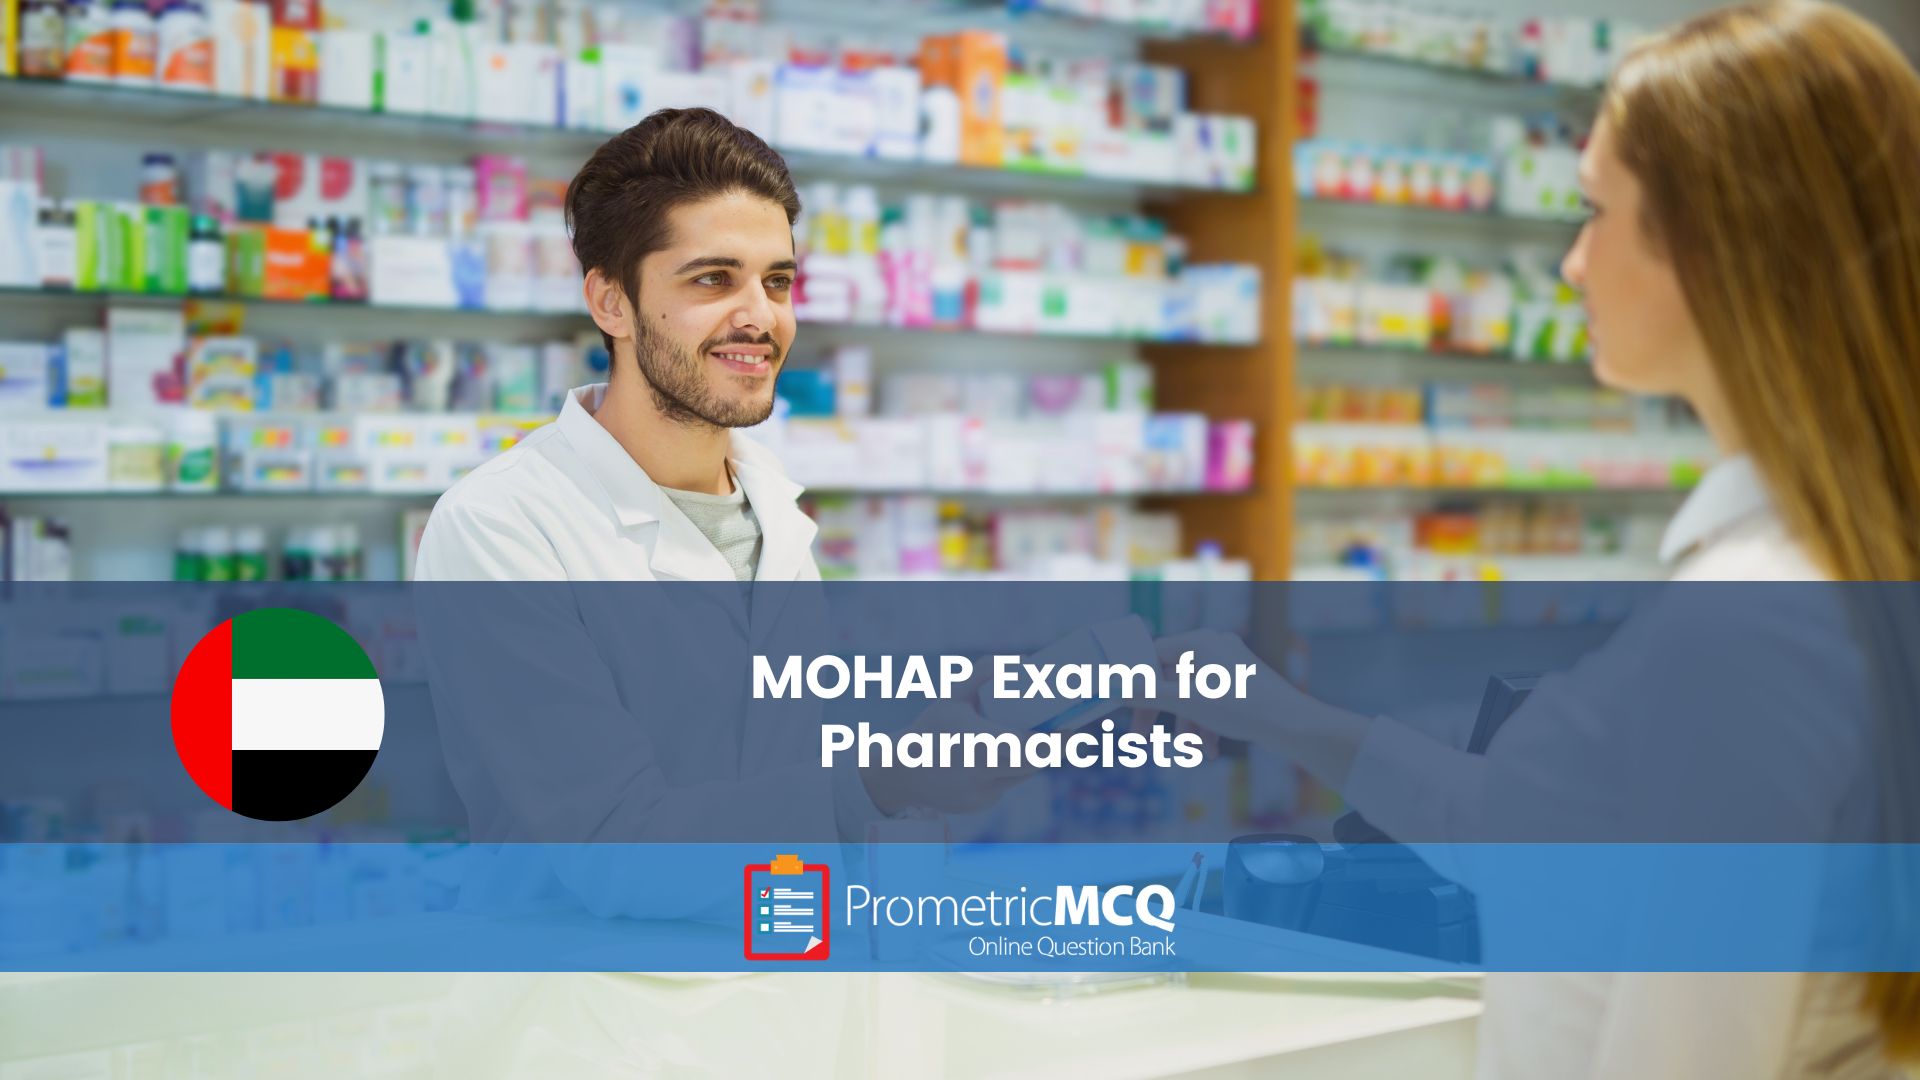 MOH Exam for Pharmacist